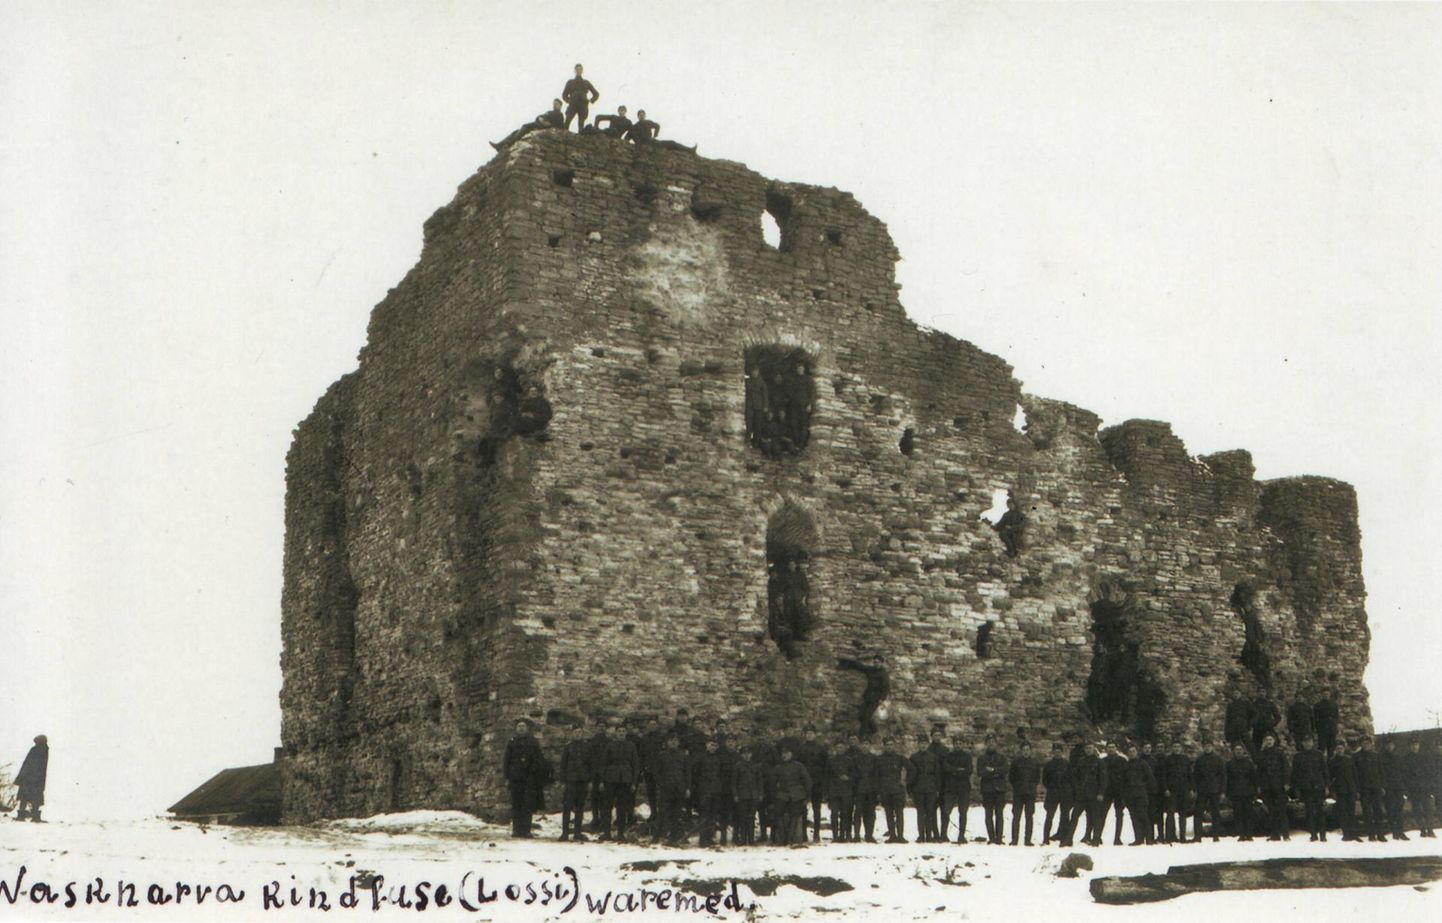 6. polgu mehed Vasknarva kindluse varemete ees, sees ja otsas.